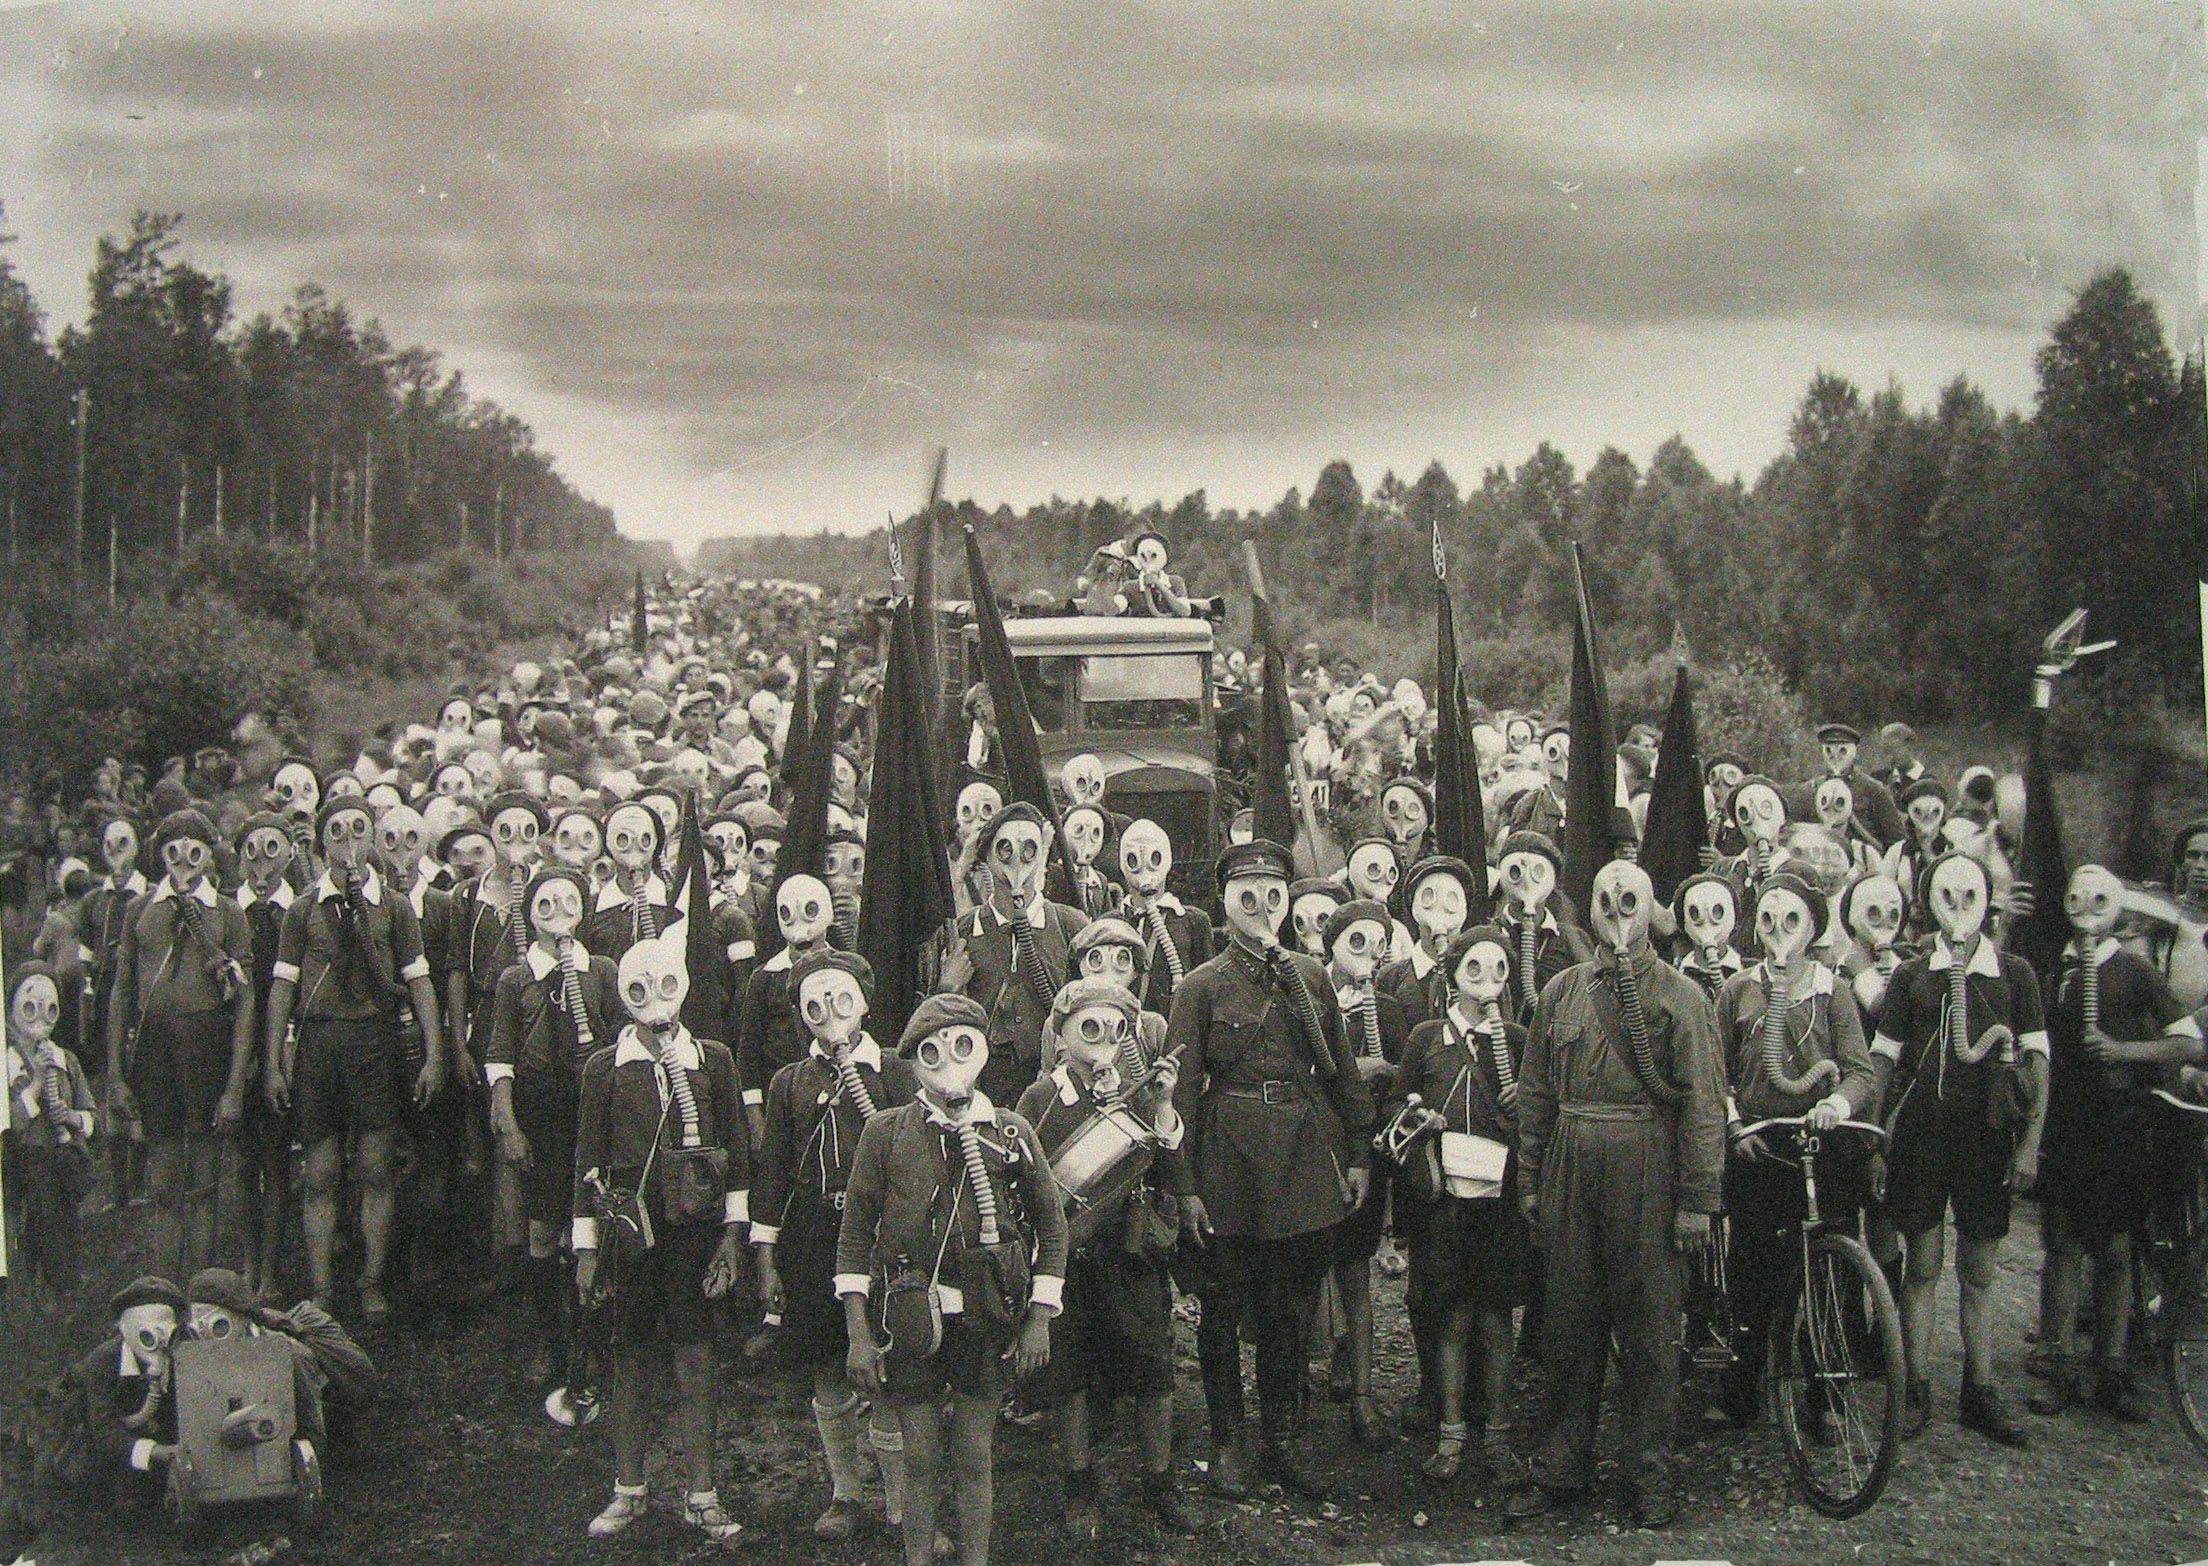 Pioneers Defense Drill Leningrad USSR 1937 Photographer Viktor Bulla